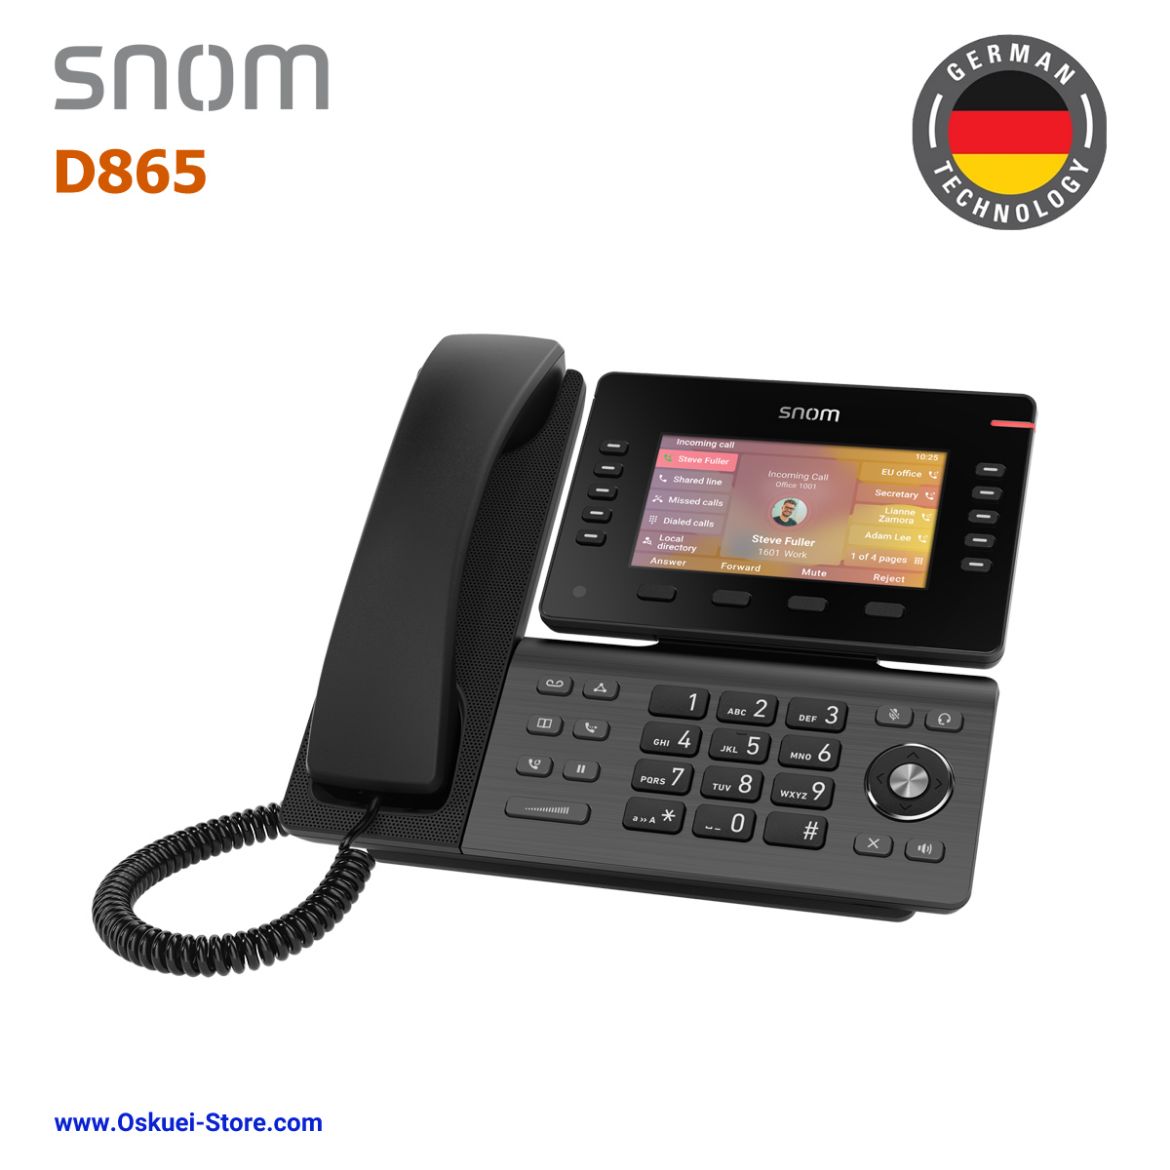 Snom D865 SIP phone Right